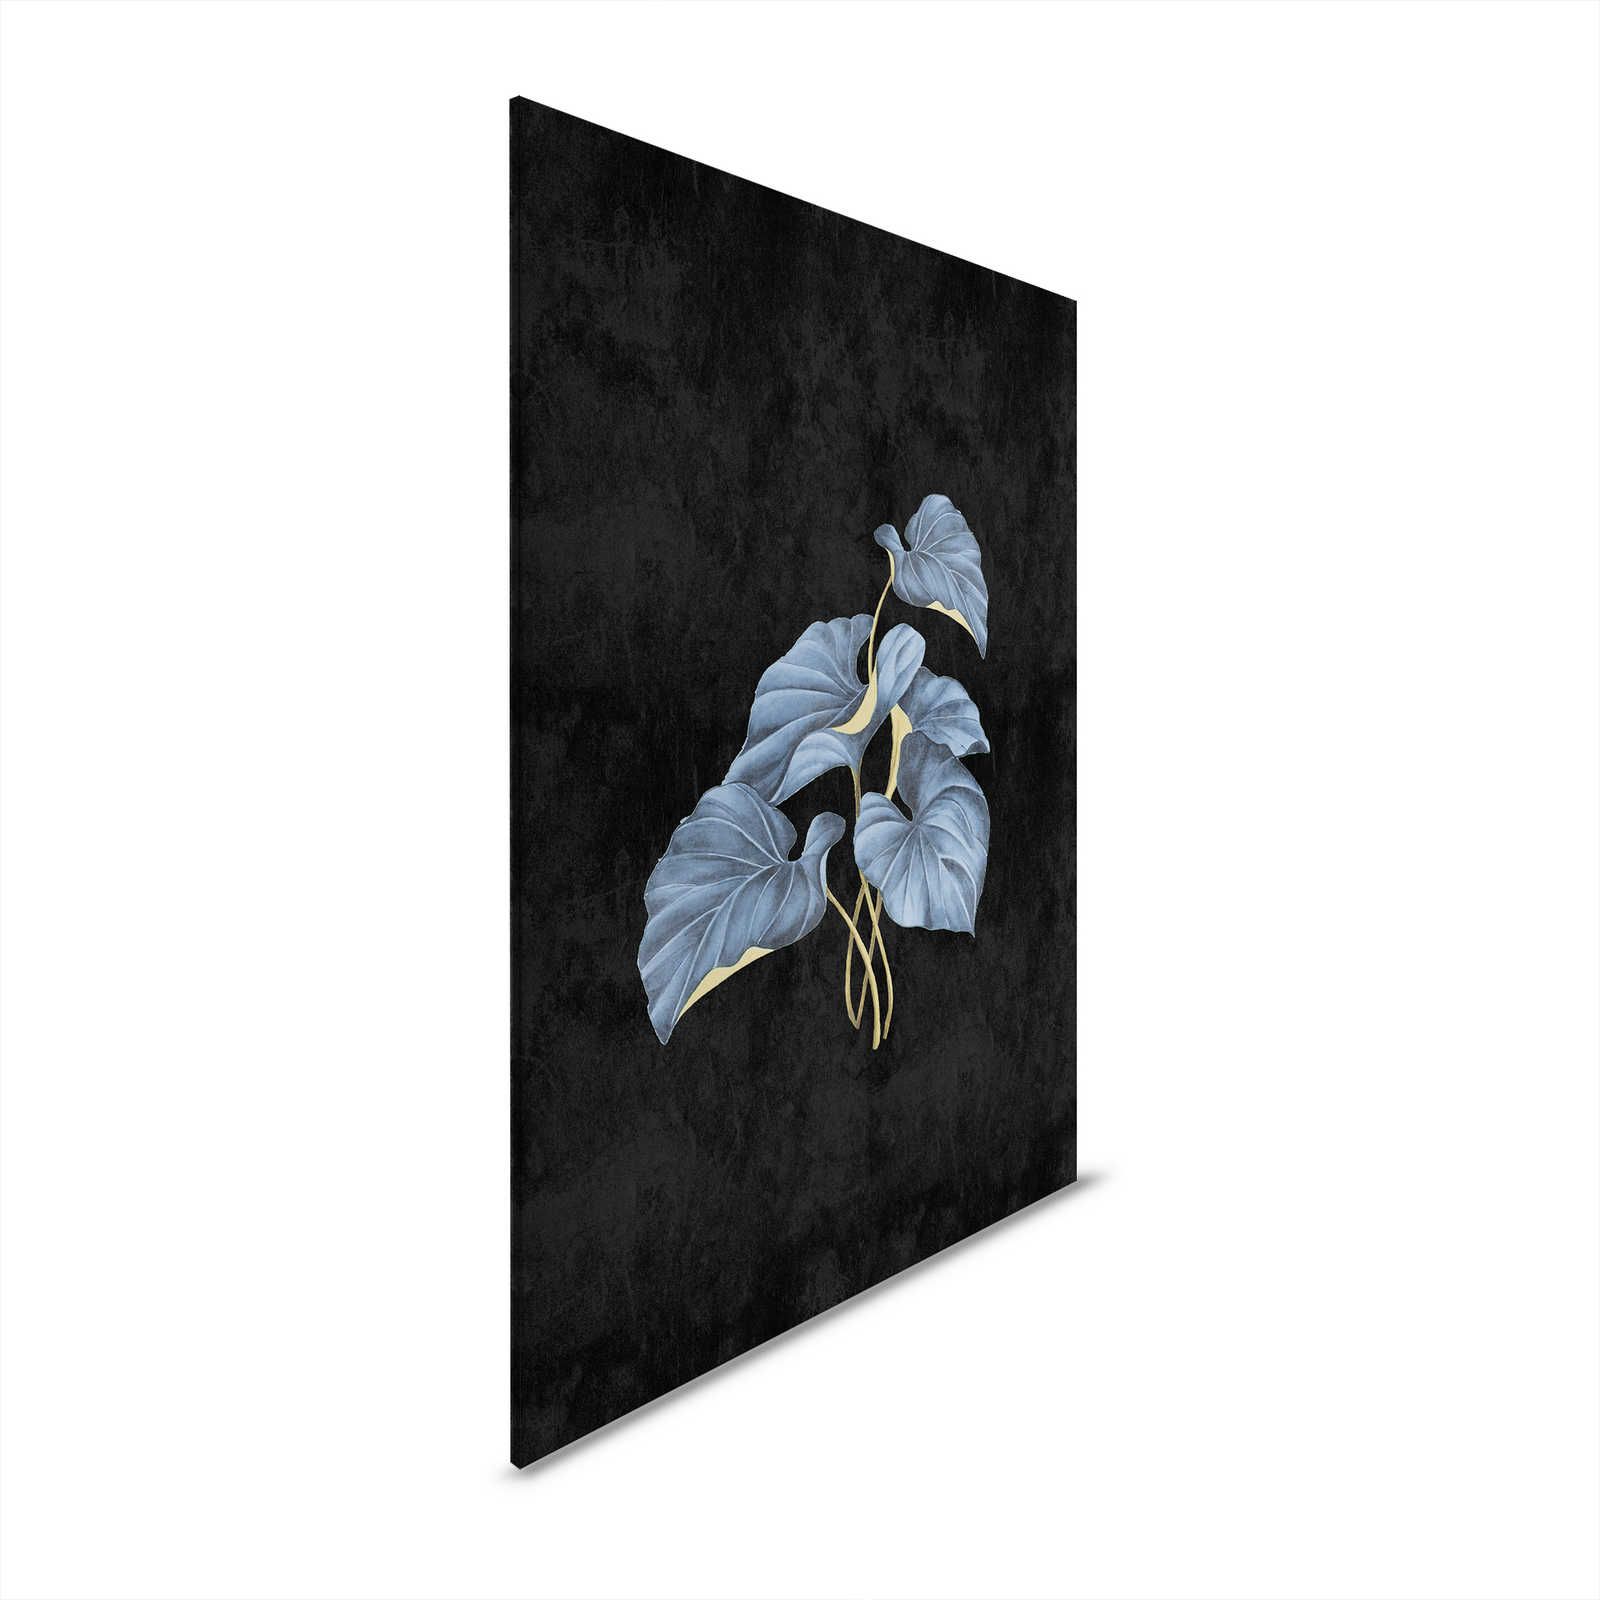 Fiji 1 - Zwart canvas schilderij Blauwe bladeren met gouden accent - 0.60 m x 0.90 m
